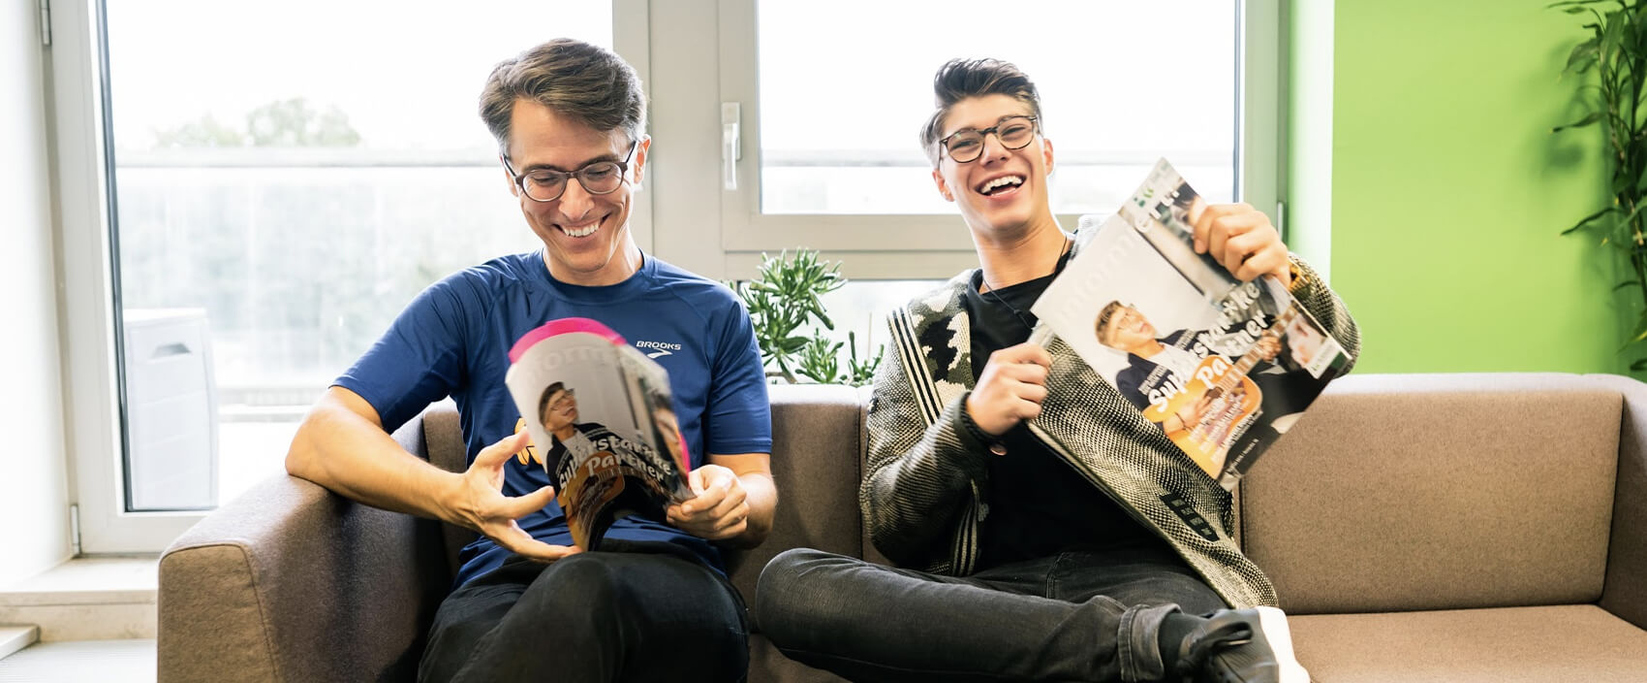 Zwei Männer sitzen lachend auf einem Sofa und blättern im Bergische Krankenkasse Kundenmagazin